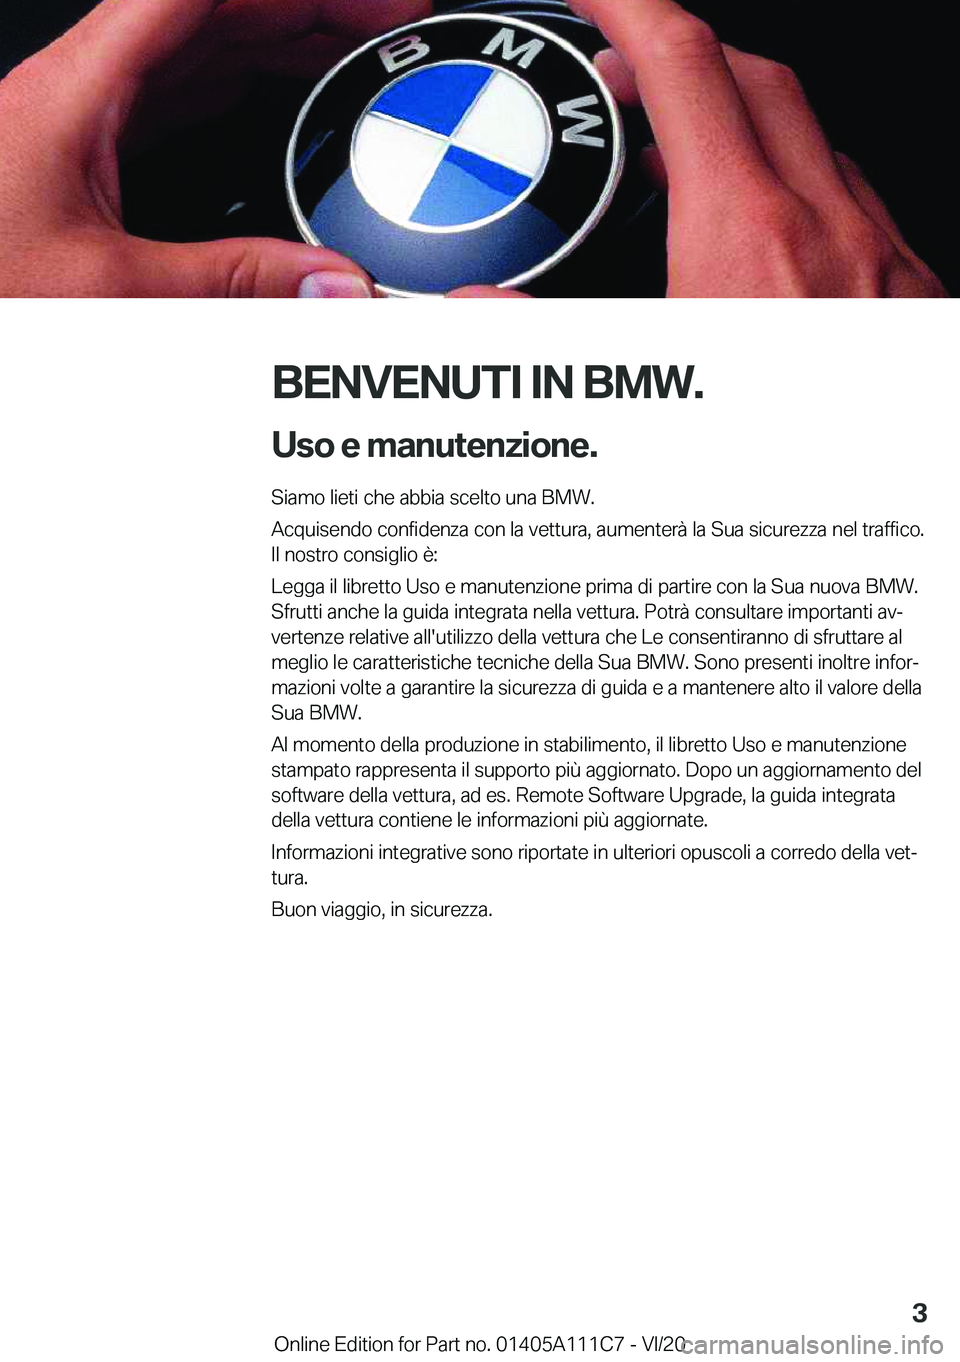 BMW 3 SERIES SEDAN PLUG-IN HYBRID 2021  Libretti Di Uso E manutenzione (in Italian) �B�E�N�V�E�N�U�T�I��I�N��B�M�W�.�U�s�o��e��m�a�n�u�t�e�n�z�i�o�n�e�.
�S�i�a�m�o��l�i�e�t�i��c�h�e��a�b�b�i�a��s�c�e�l�t�o��u�n�a��B�M�W�.
�A�c�q�u�i�s�e�n�d�o��c�o�n�f�i�d�e�n�z�a��c�o�n�